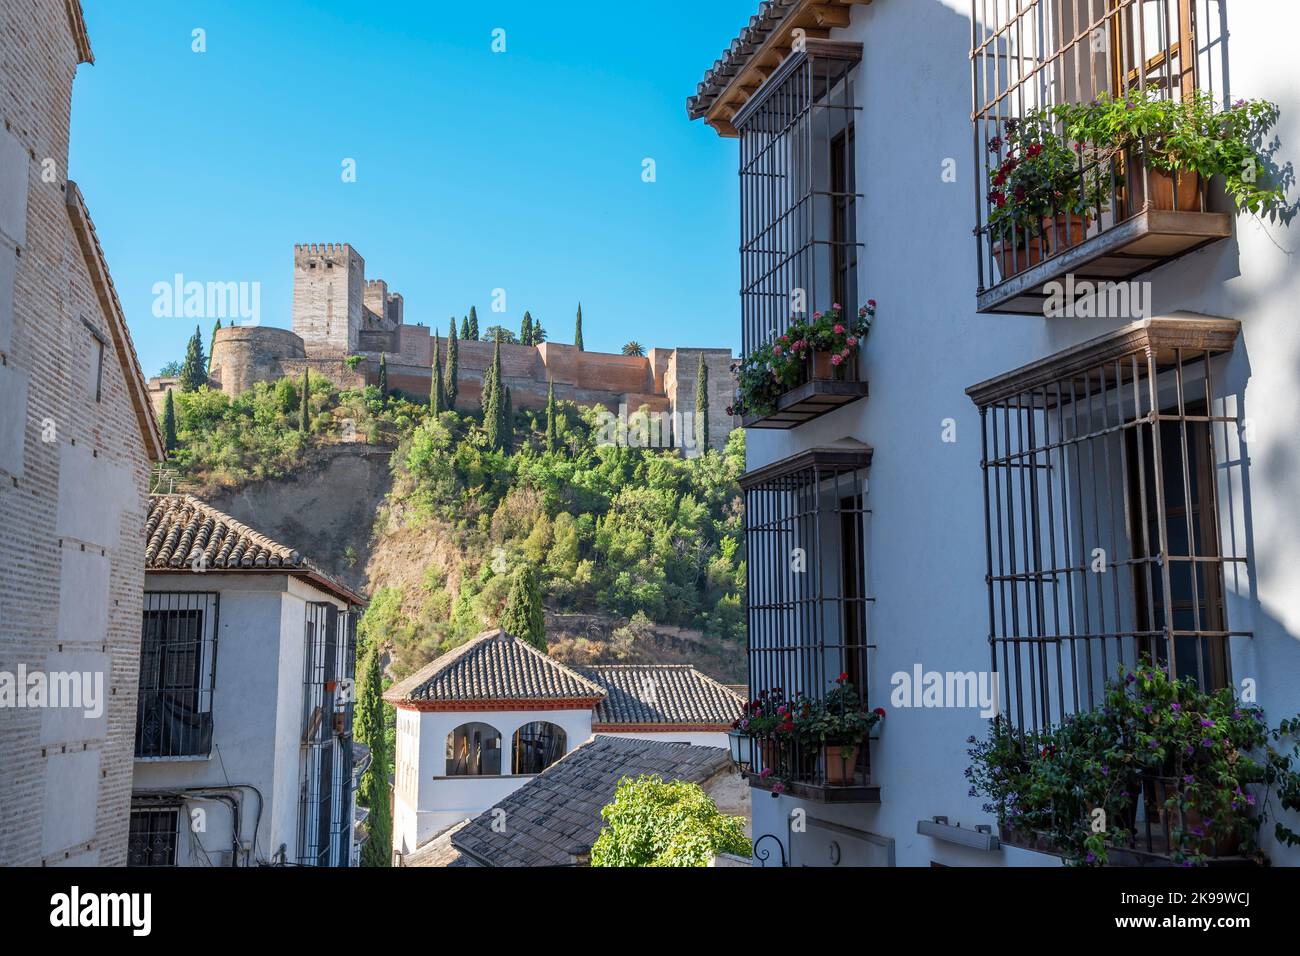 Vista alejada de la Alhambra desde una calle de tradicionales casas blancas de la ciudad de Granada, EspaÃ±a Stock Photo